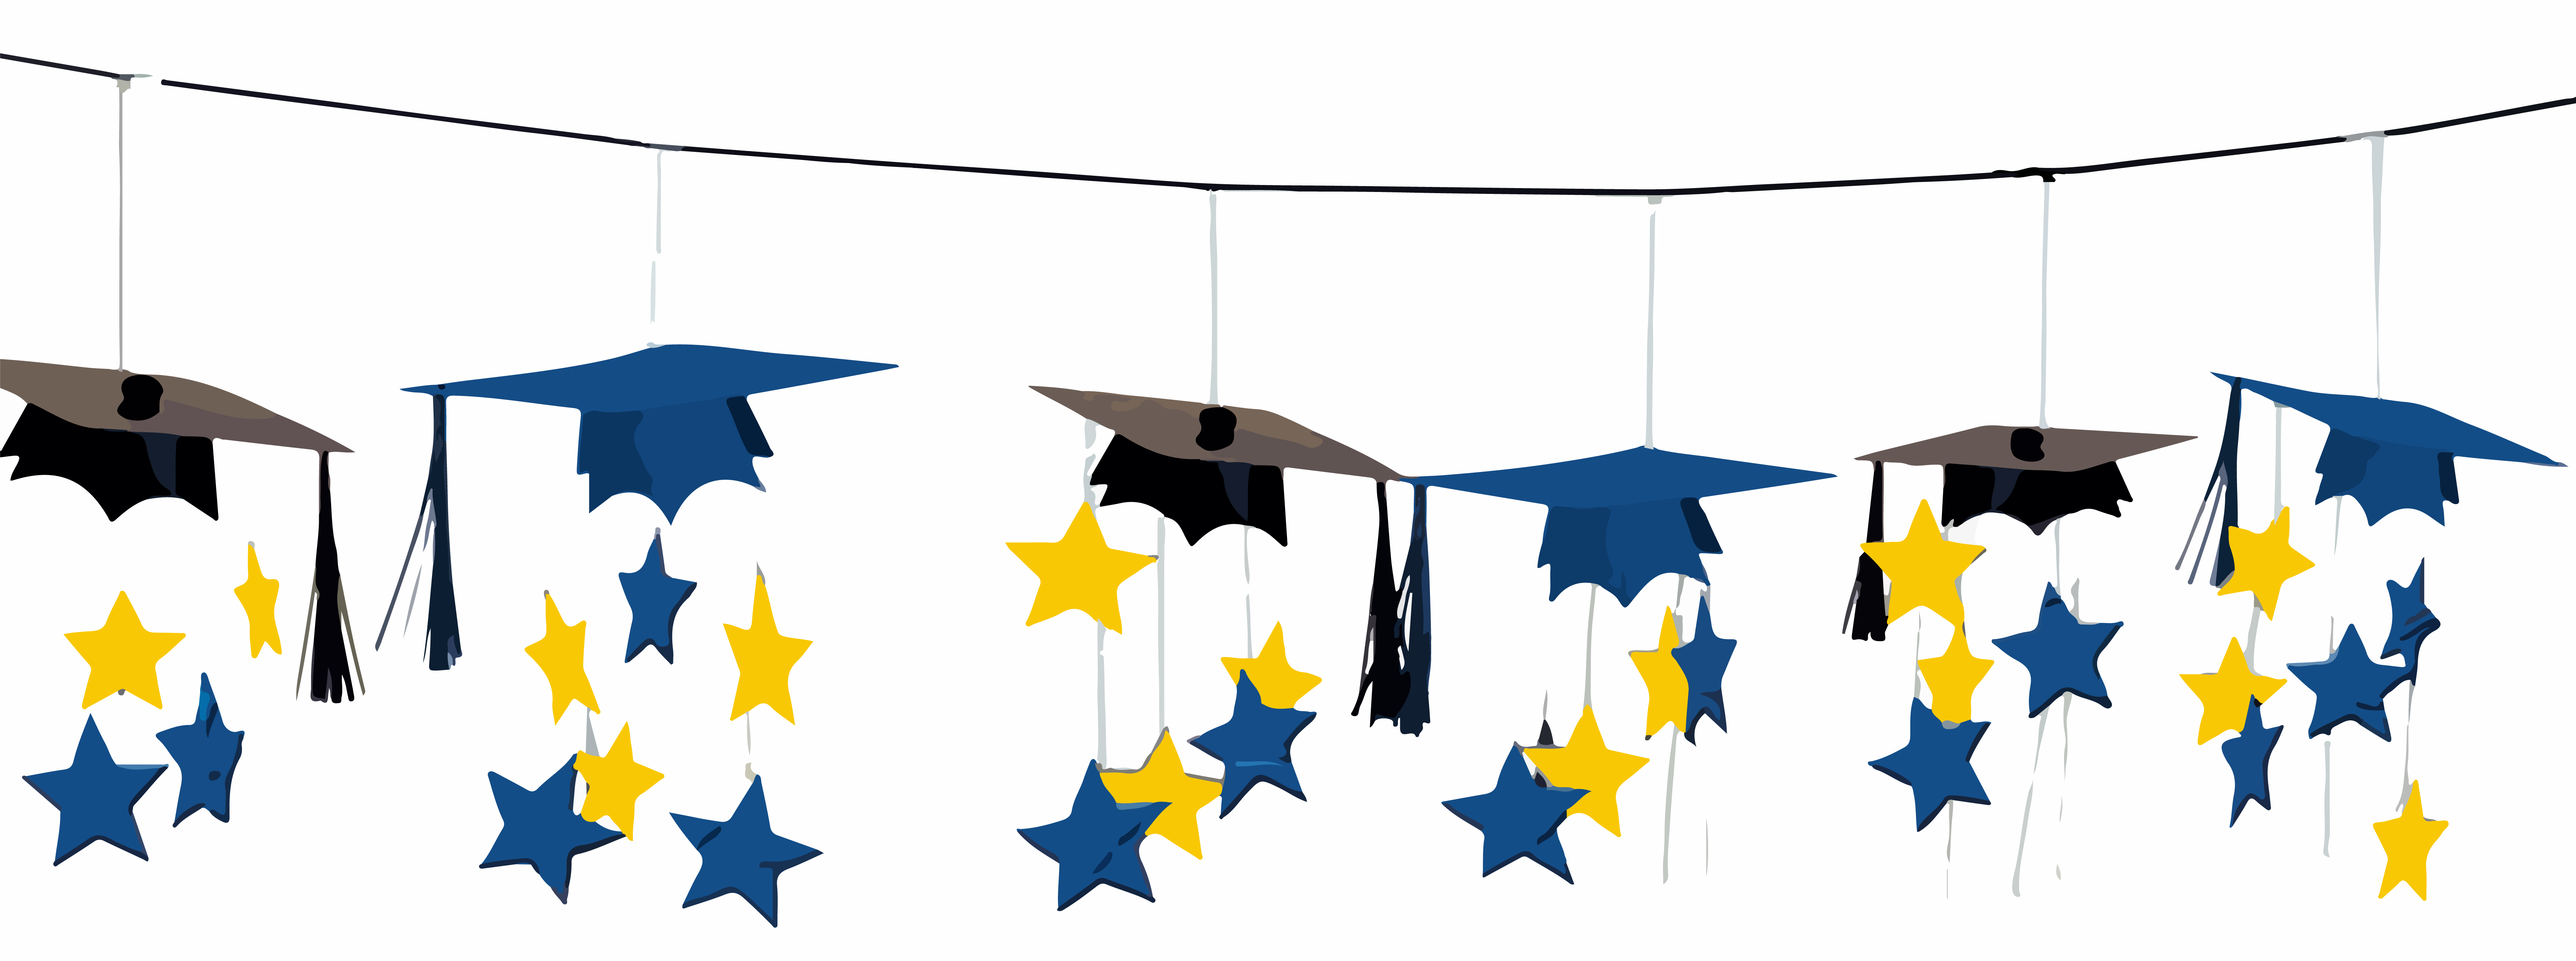 graduation-clipart-2021-graduation-cliparts-10-free-cliparts